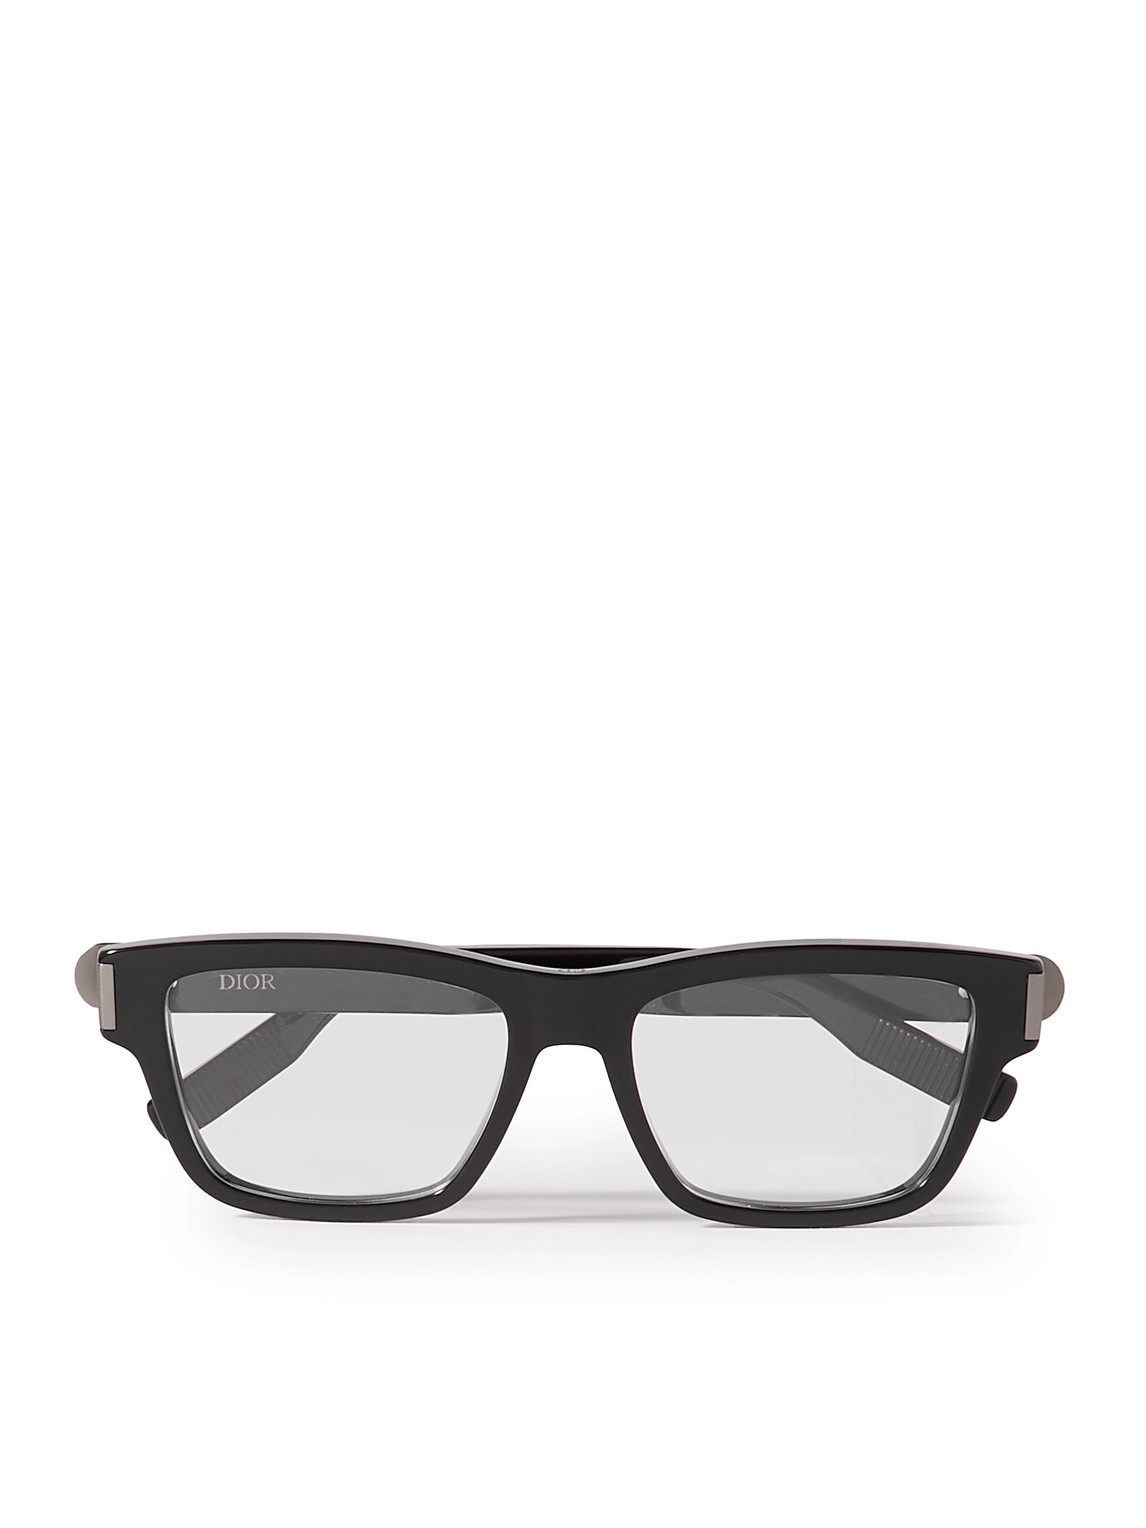 Dior Eyewear - CDicono S1I Square-Frame Acetate Optical Glasses - Men - Black von Dior Eyewear